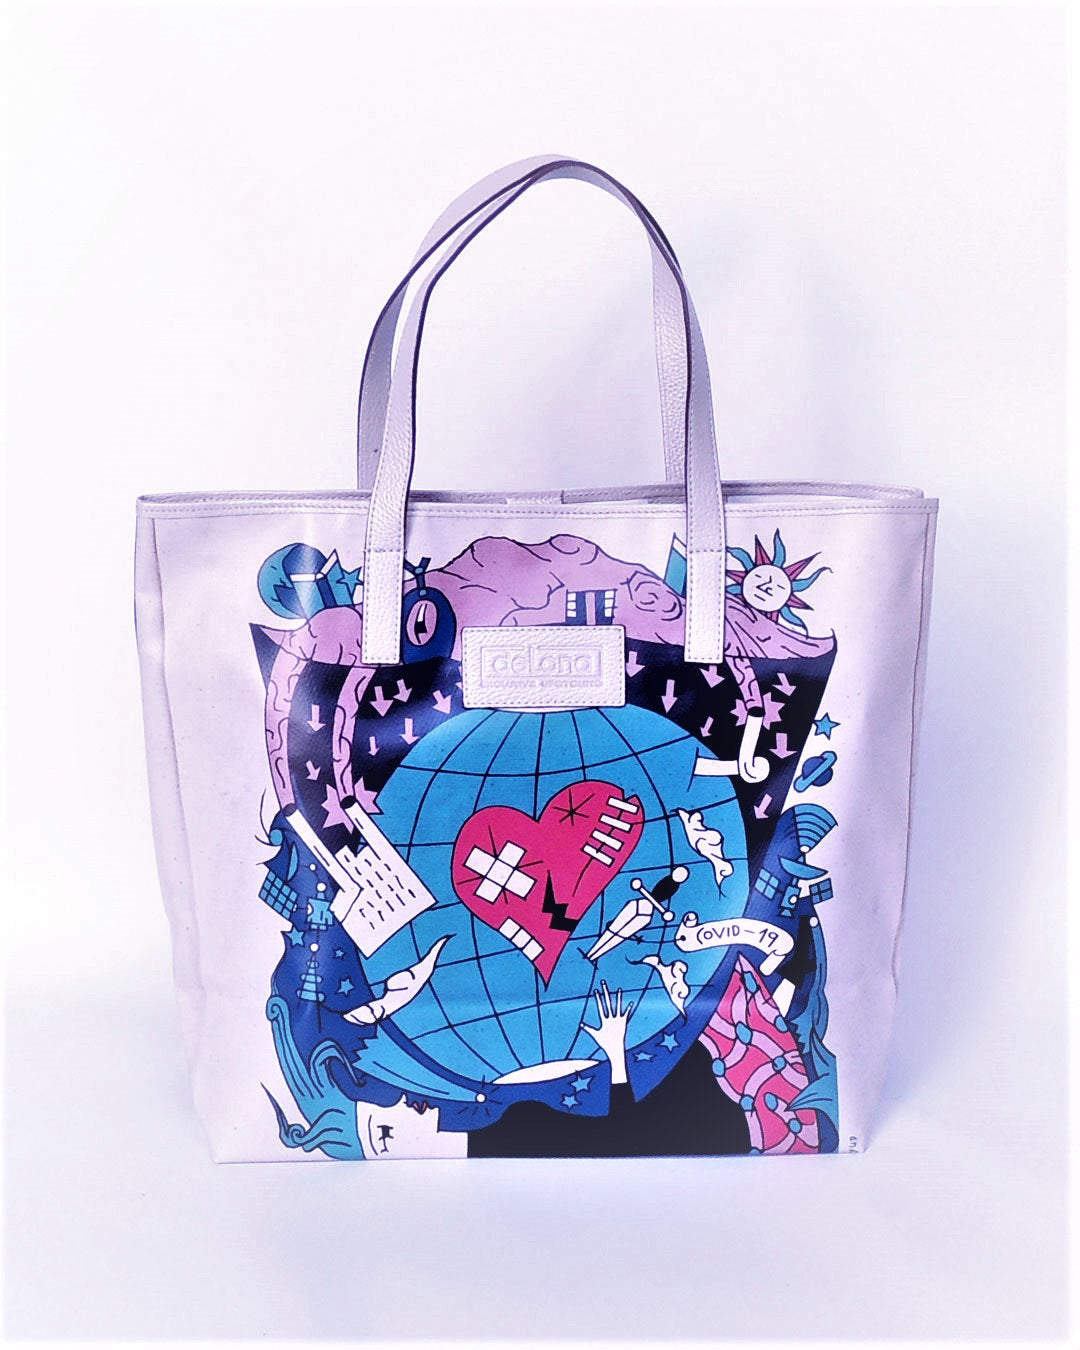 Tote Bag - T015 - Shopping Bag confeccionado con lona publicitaria y piel